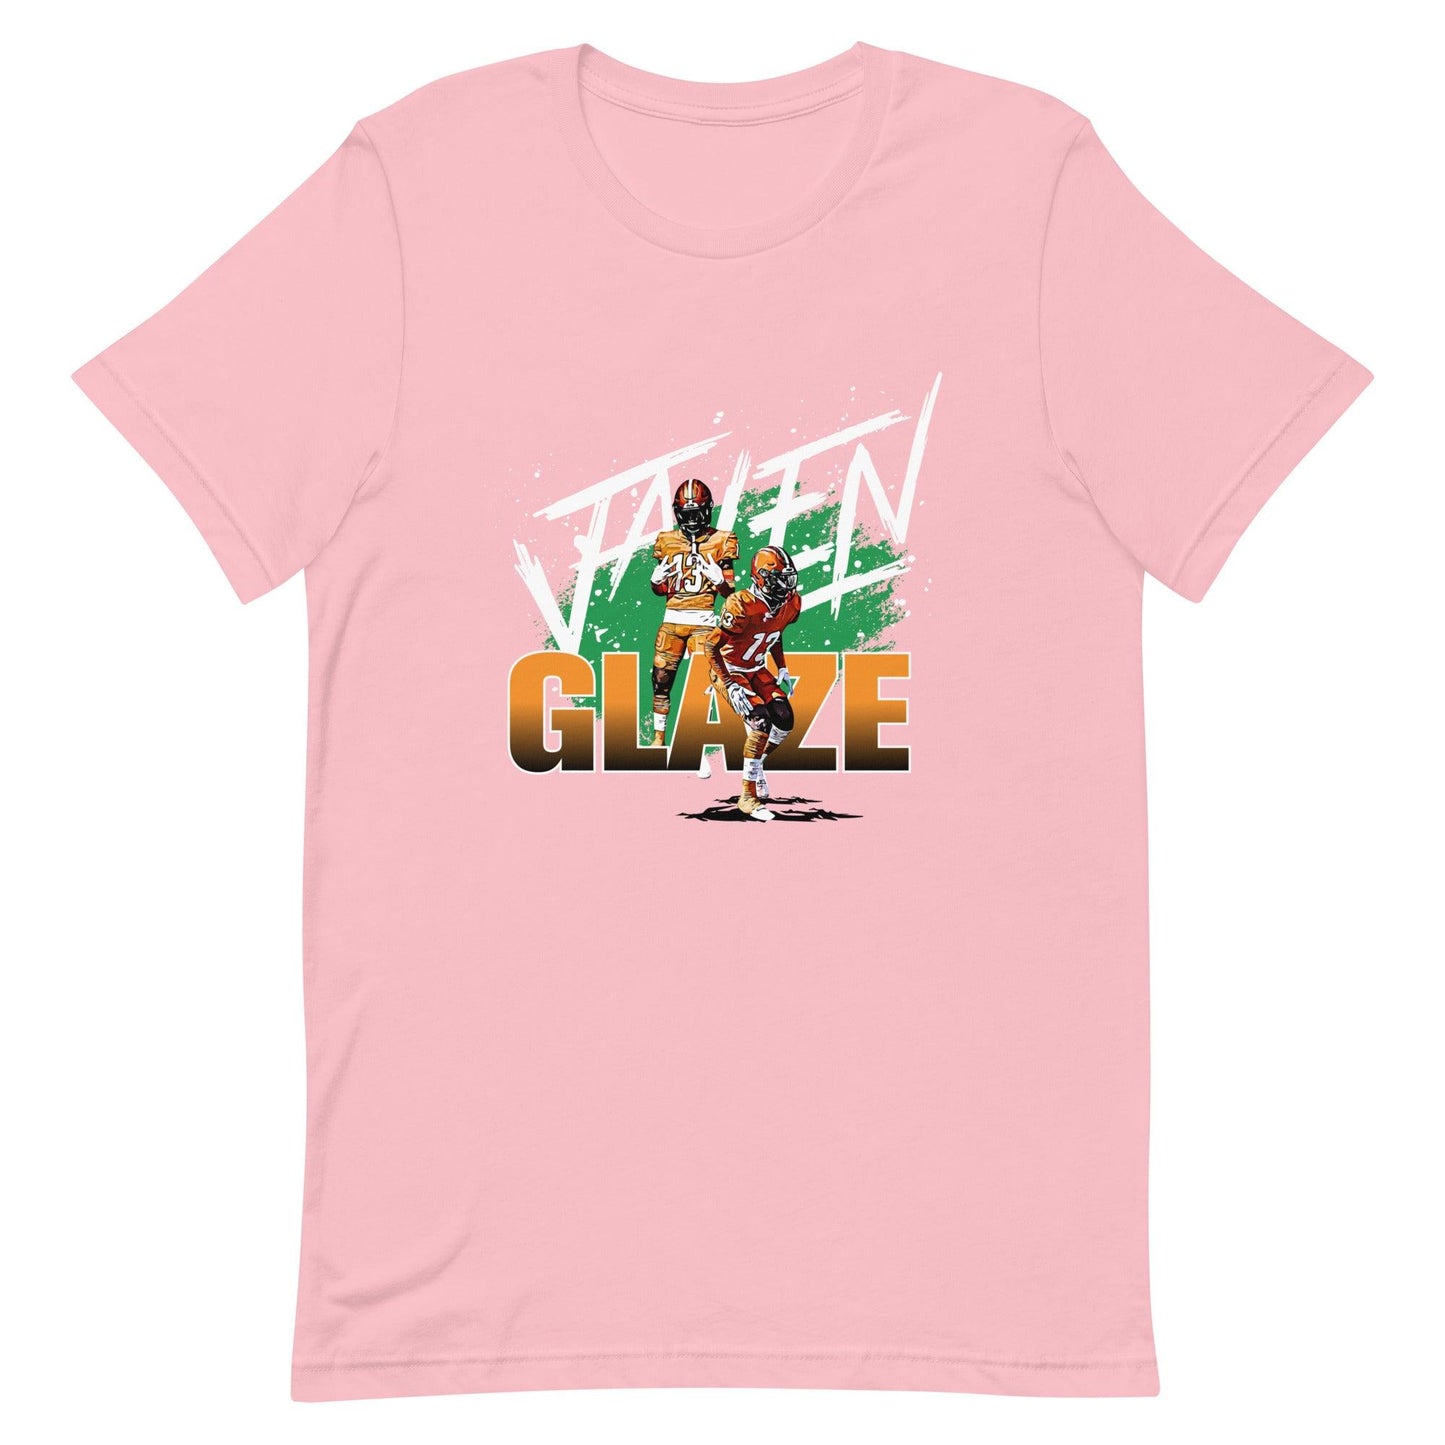 Jalen Glaze "Gameday" t-shirt - Fan Arch